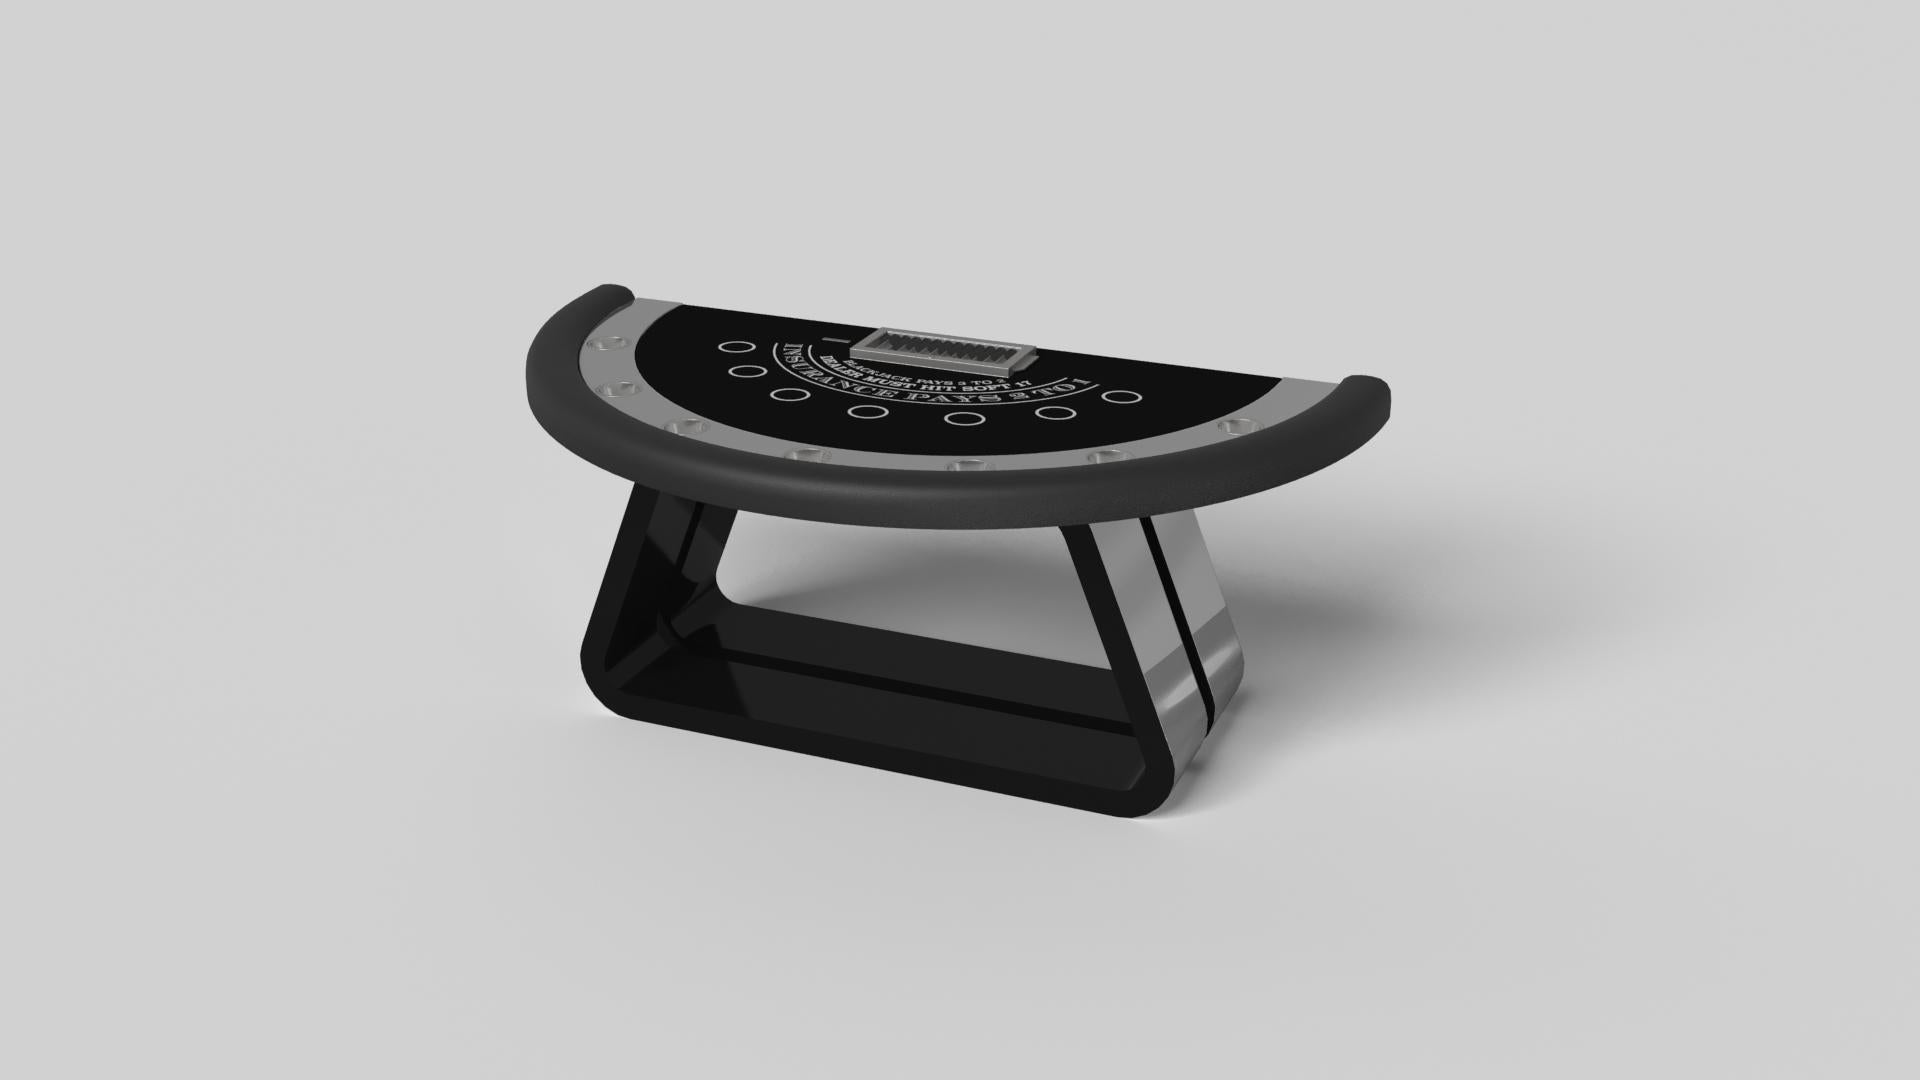 La table de blackjack Luge en noyer est dotée d'une base ouverte aux courbes généreuses et aux bords lisses qui lui confèrent une sensation de légèreté et d'aération. Évoquant la vitesse et l'esprit de mouvement continu, cette table de jeu exclusive